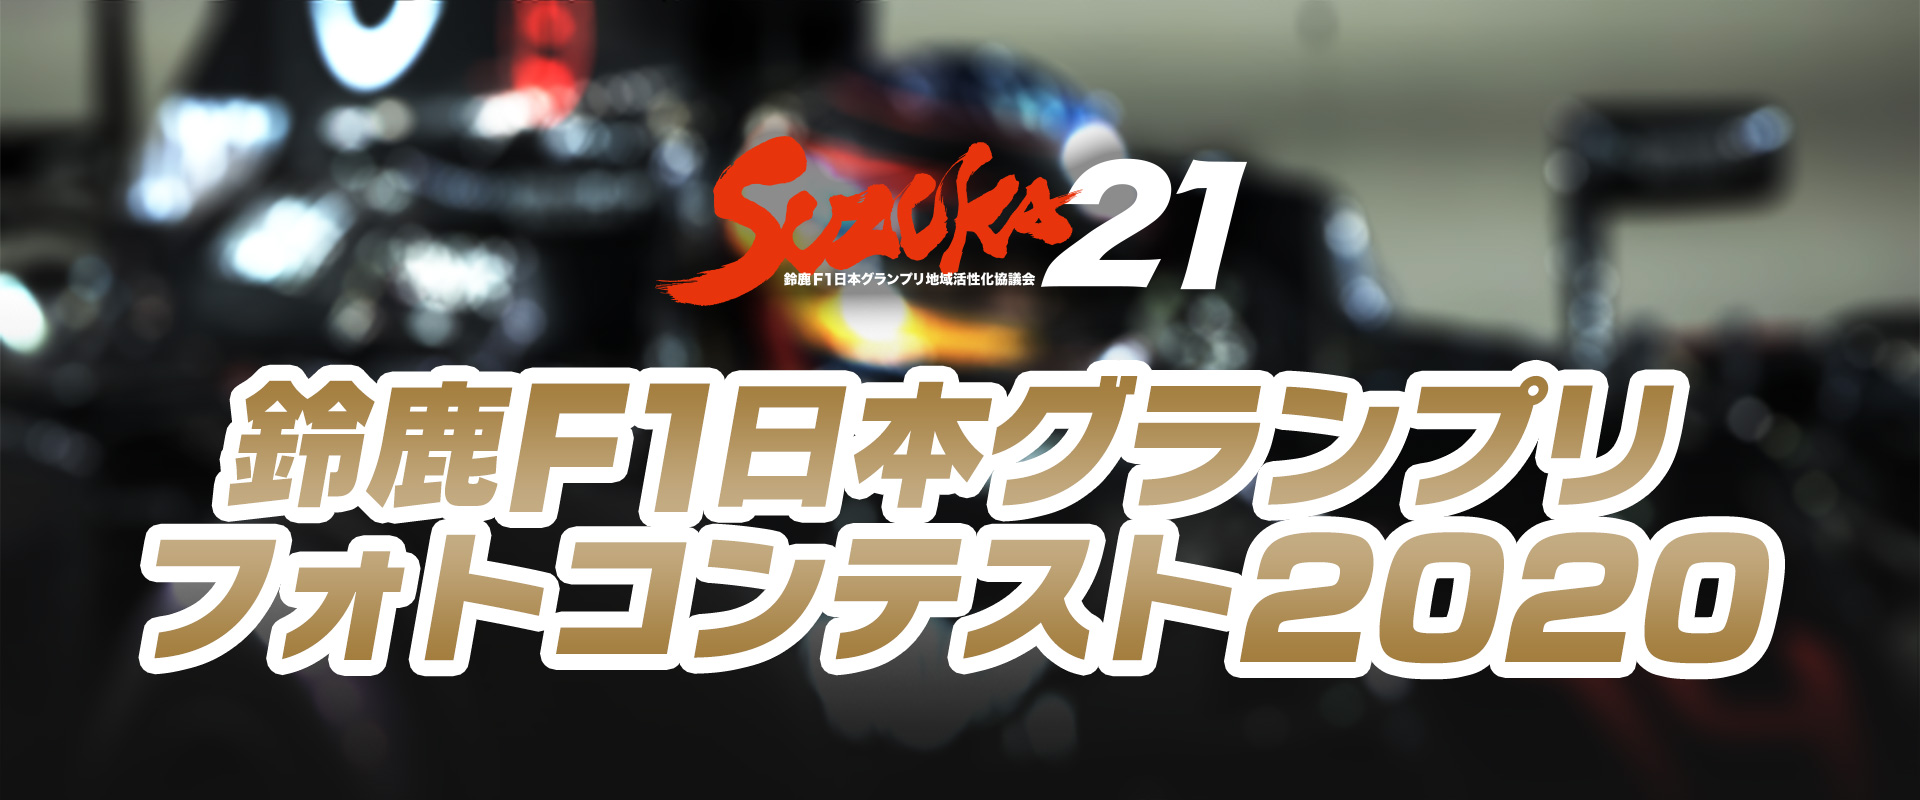 鈴鹿F1日本グランプリ フォトコンテスト2020